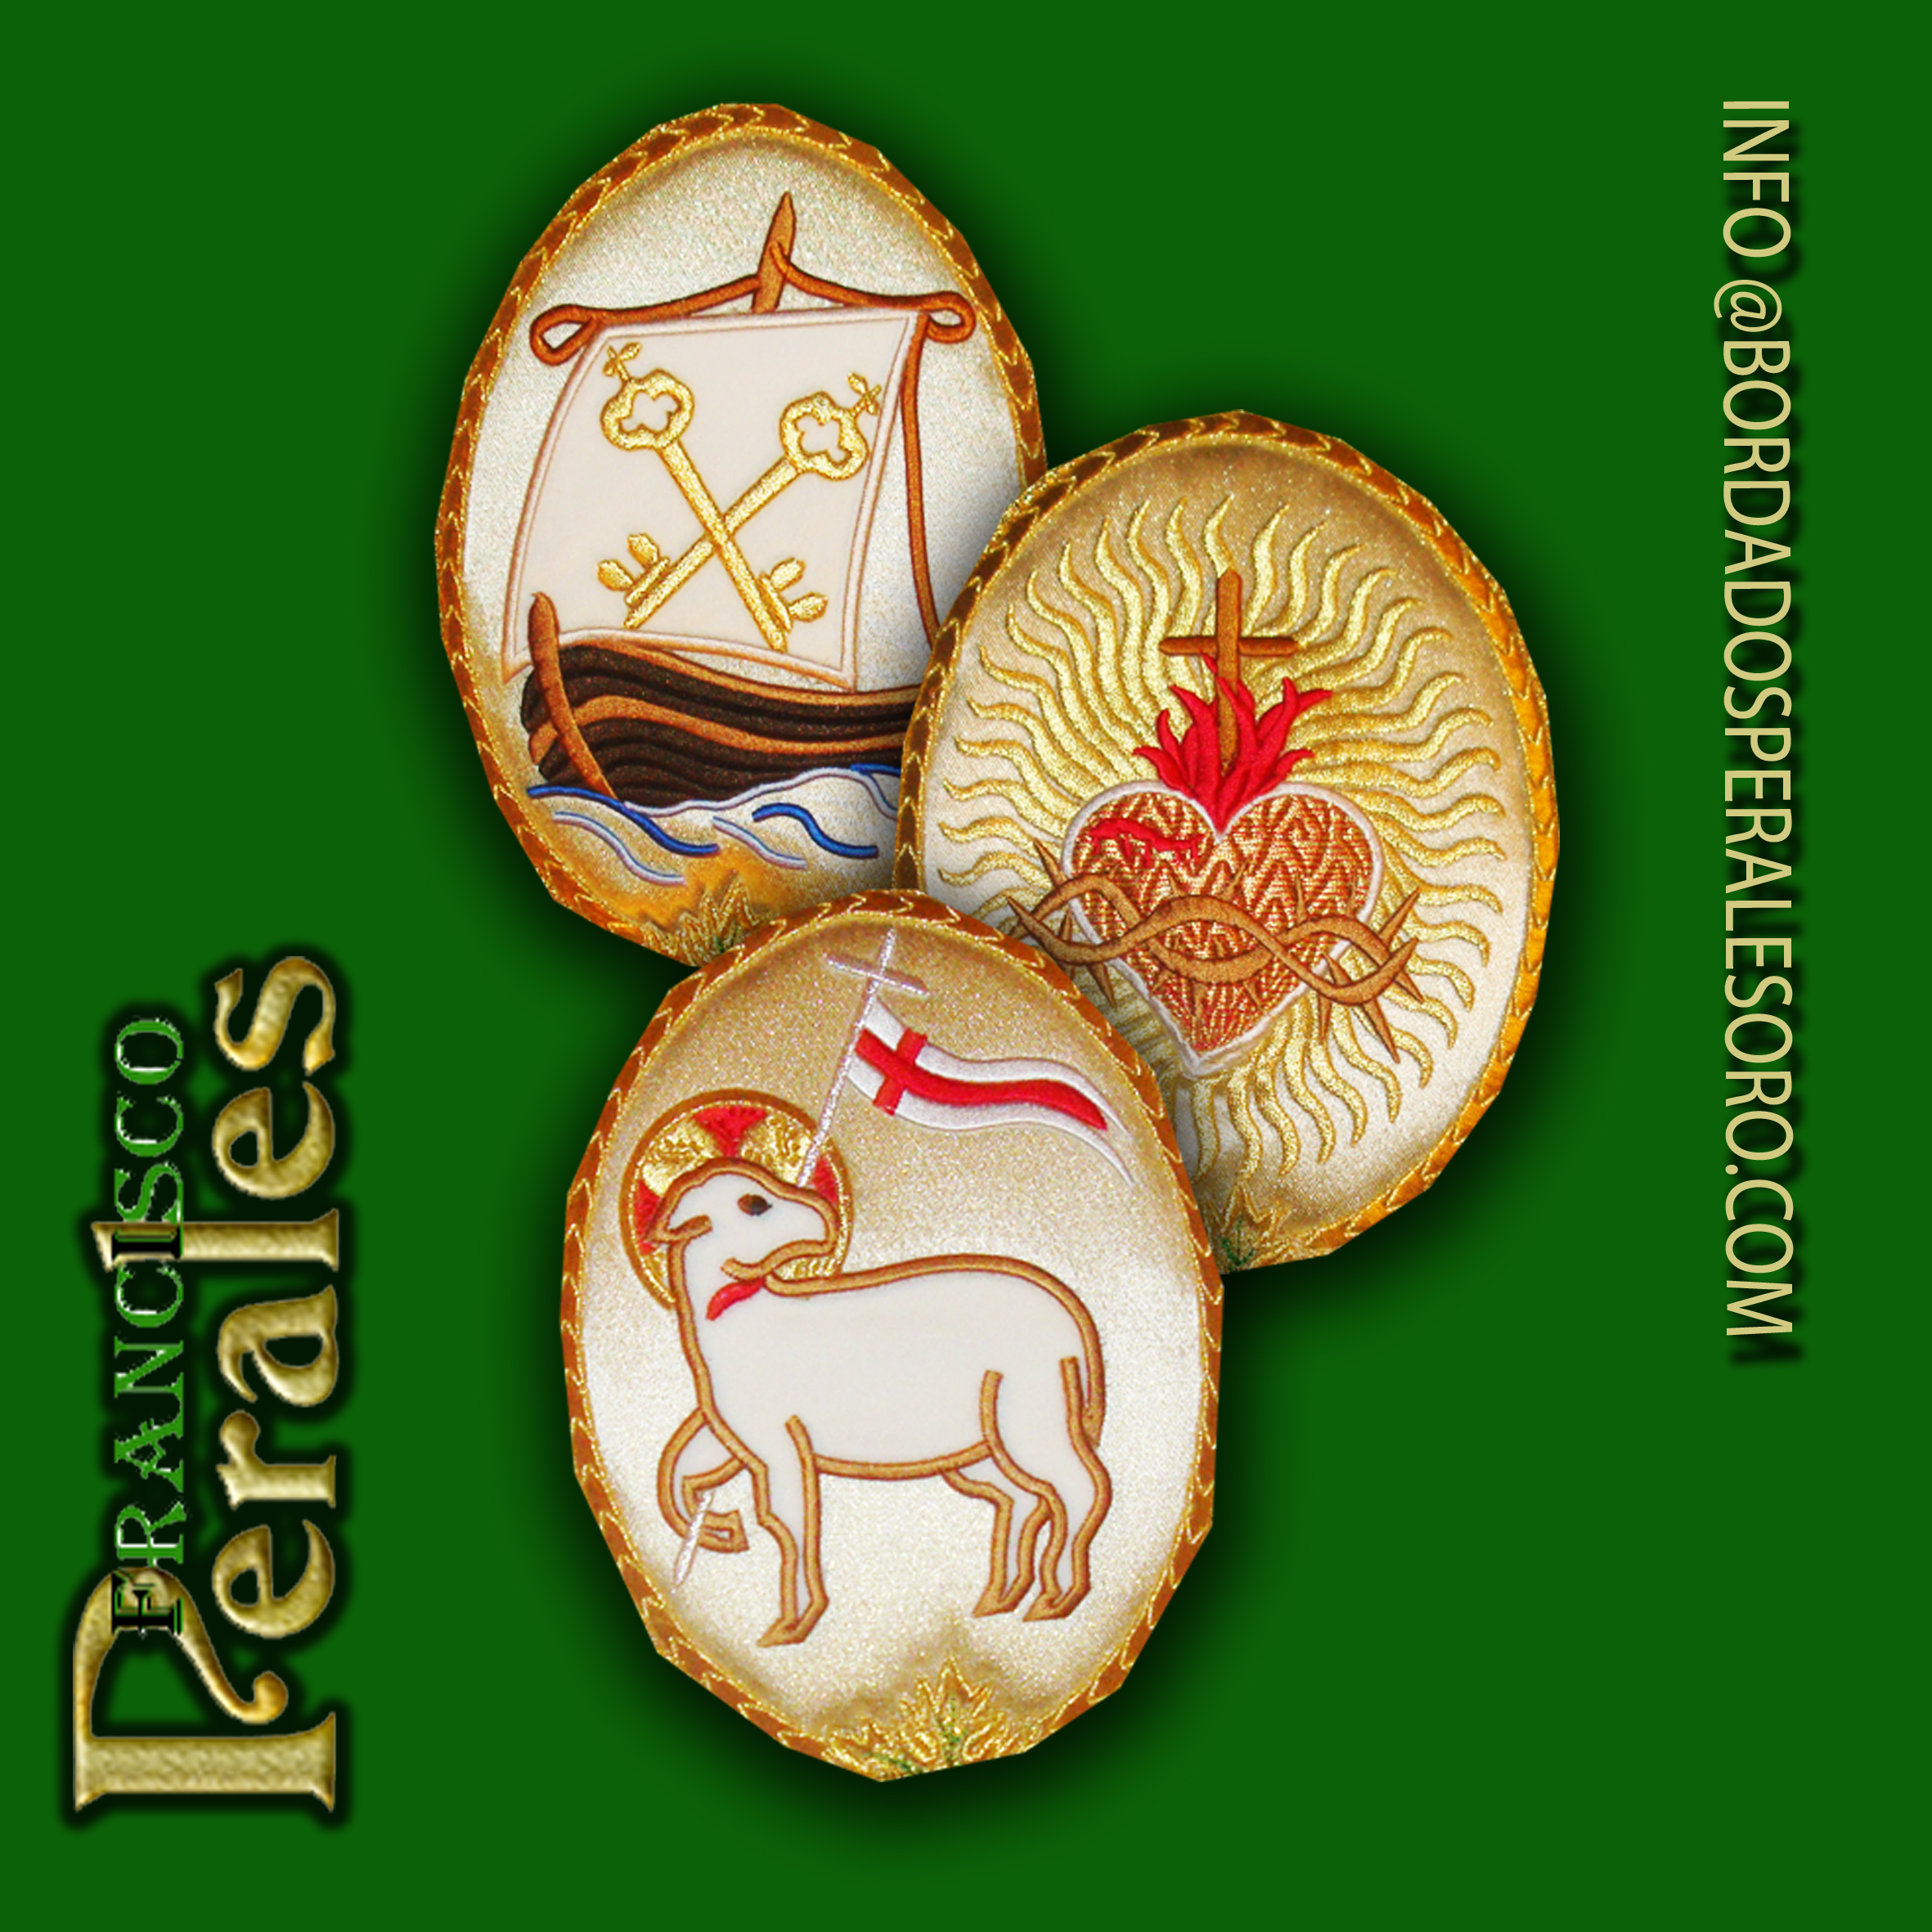 Óvalos y escudos con simbología eclesiástica